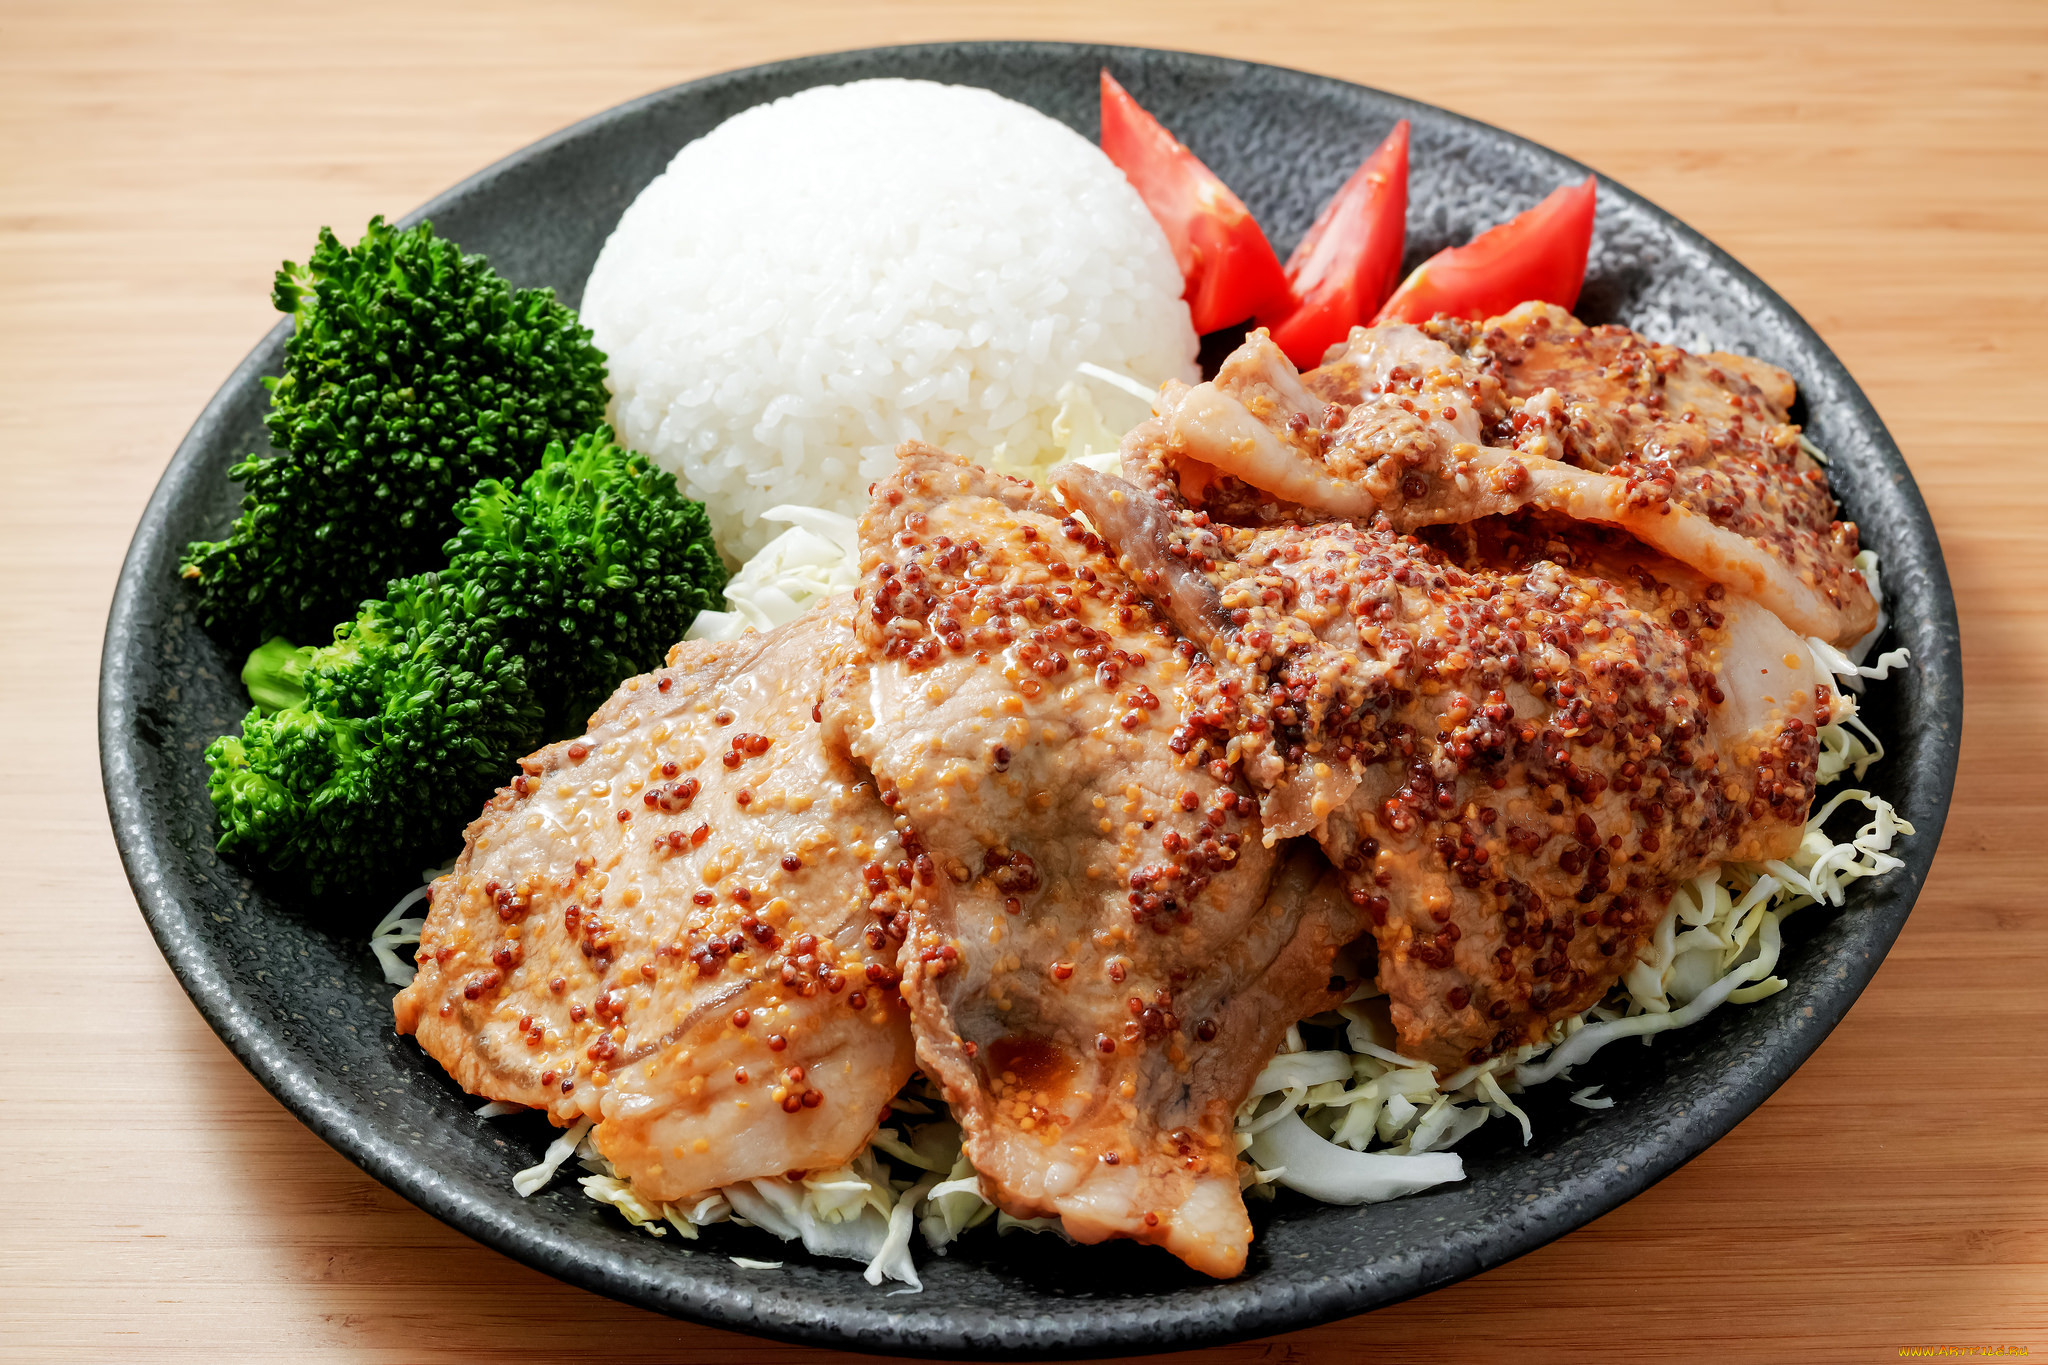 Meat rice. Японская кухня мясо. Блюдо рис с мясом и овощами. Вторые блюда цпленоквид сверху. Картинка второго блюда с рисом с и мясом.